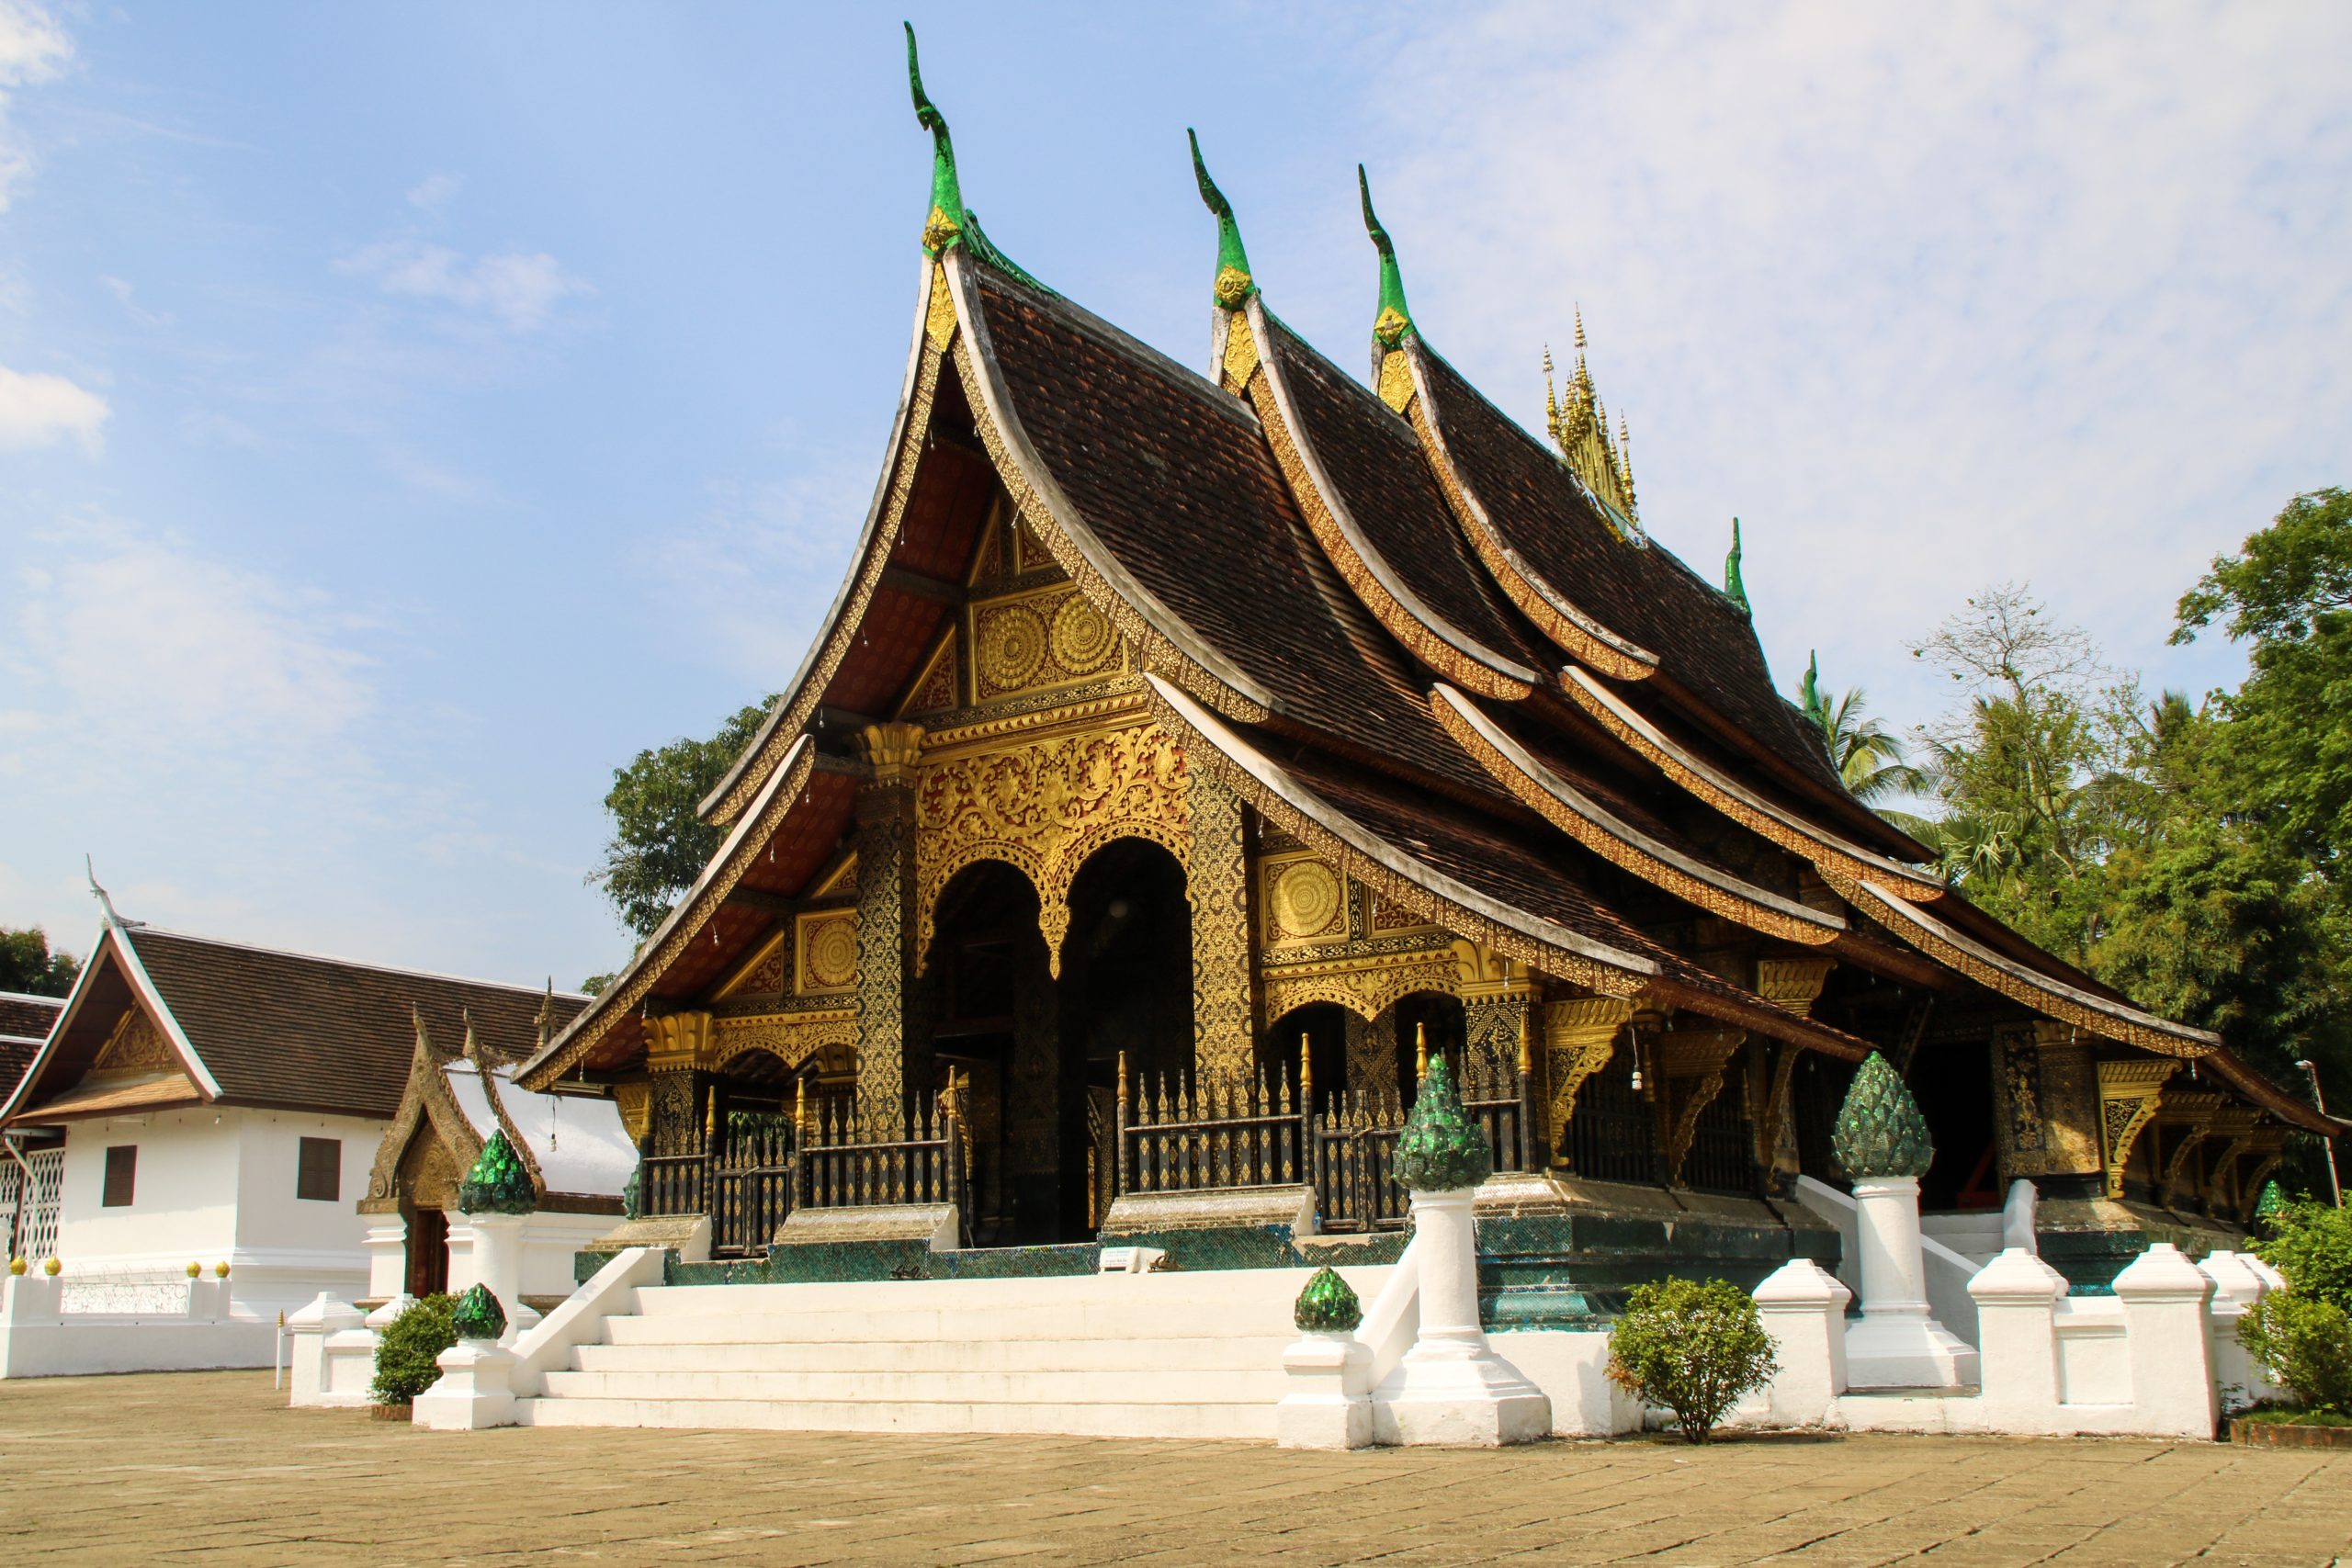 Laos_Wat-Xieng-Thong-scaled-1.jpg